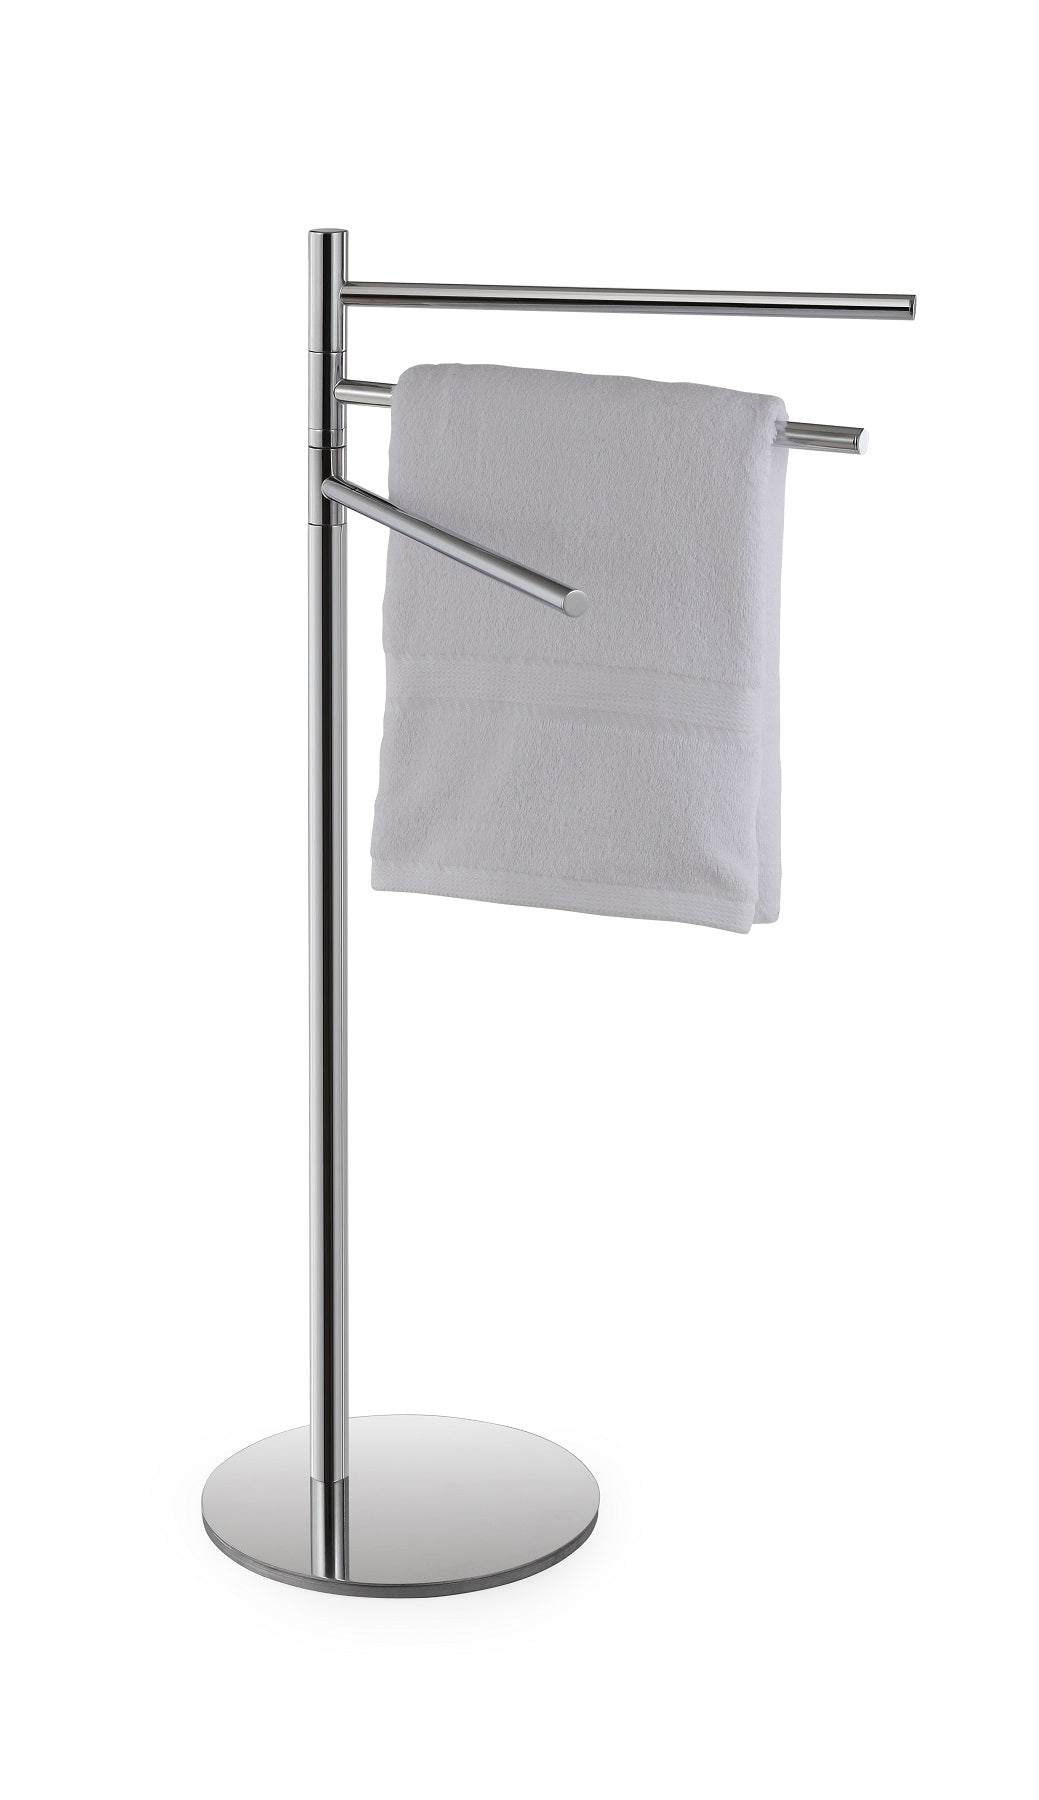 Porte serviette triple pivotant à poser sur pied OMEGA en chrome 37x85x25 cm clicktofournisseur.com